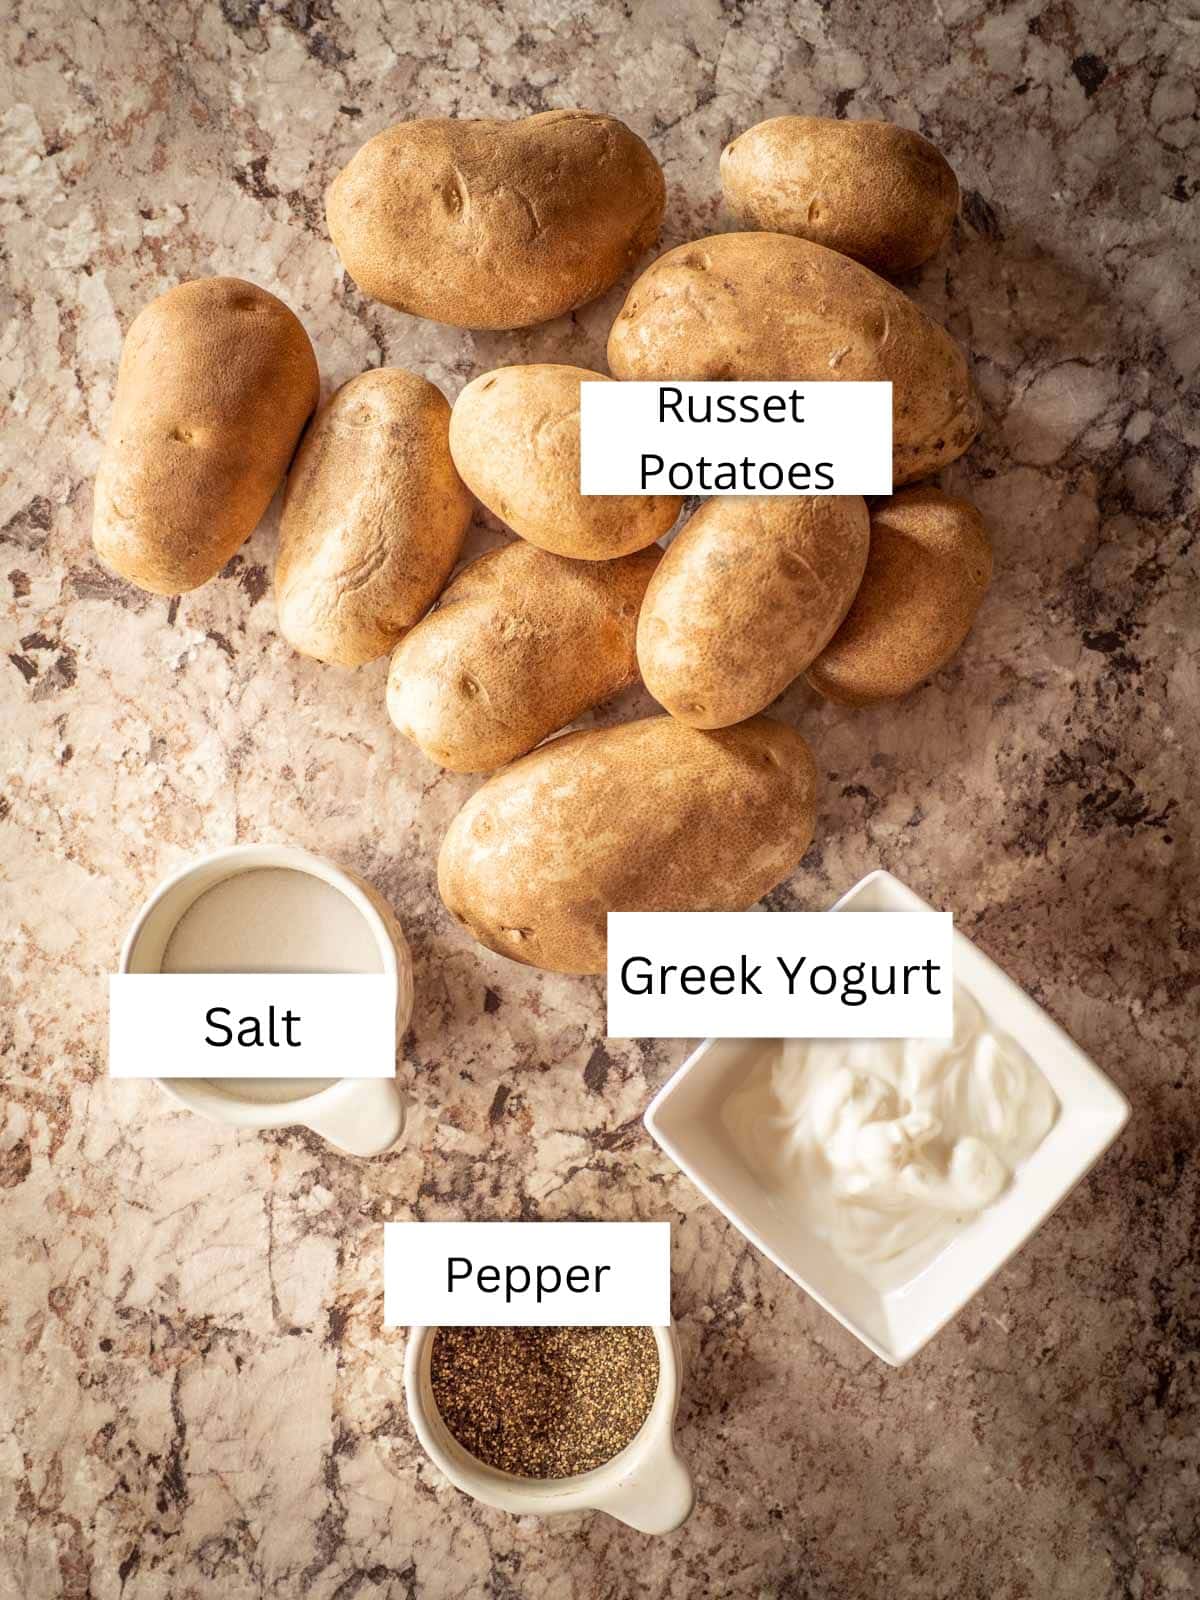 Ingredients for Greek yogurt mashed potatoes.